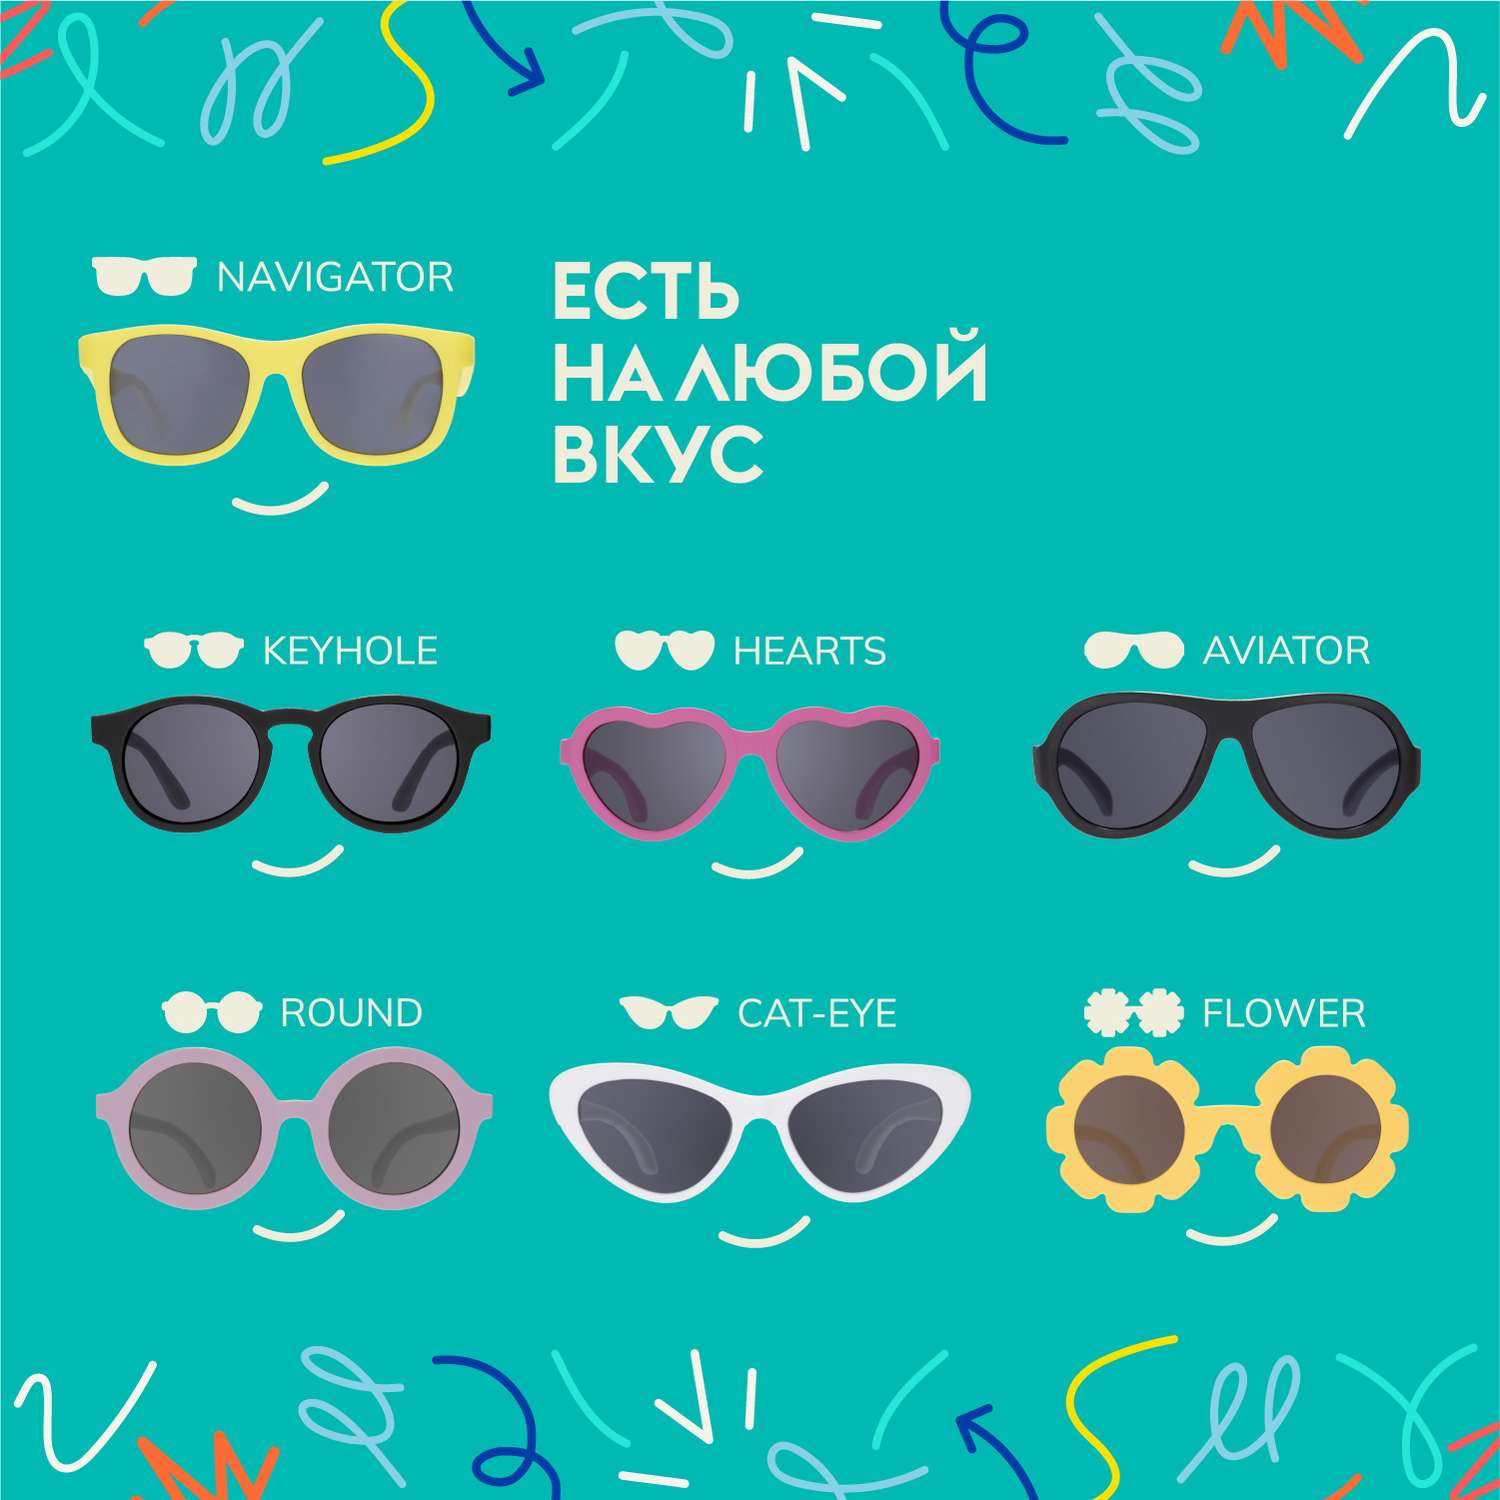 Солнцезащитные очки Babiators Original Cat-Eye Чёрный спецназ 3-5 CAT-005 - фото 6